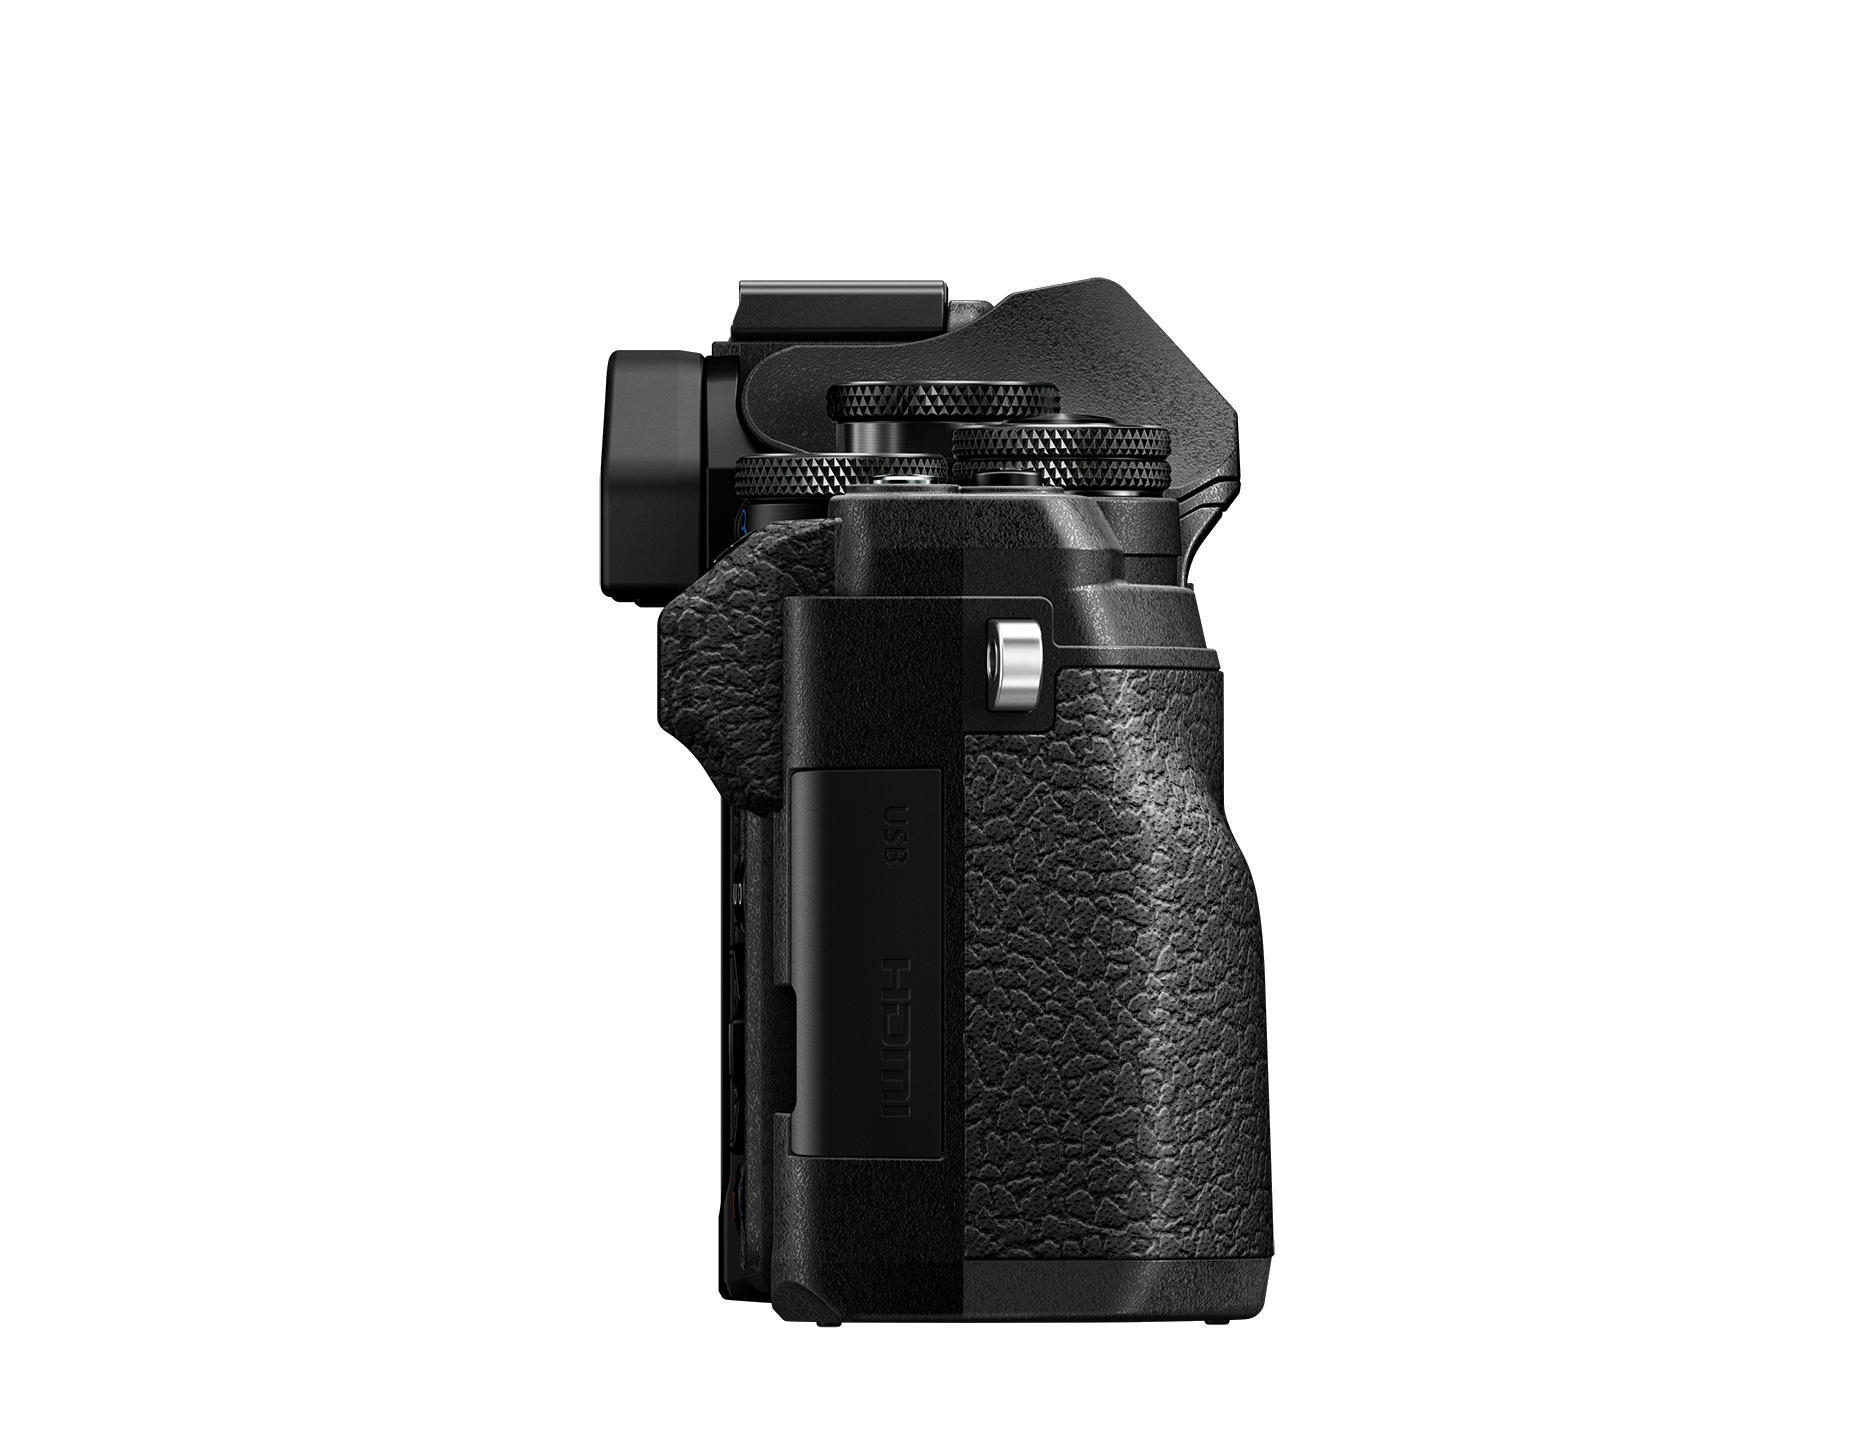 Selfie cm kompakte Kit, E-M10 IV 7,6 Mark Display WLAN Pancake F3.5-5.6, OLYMPUS Systemkamera, Touchscreen, OM-D 14-42mm